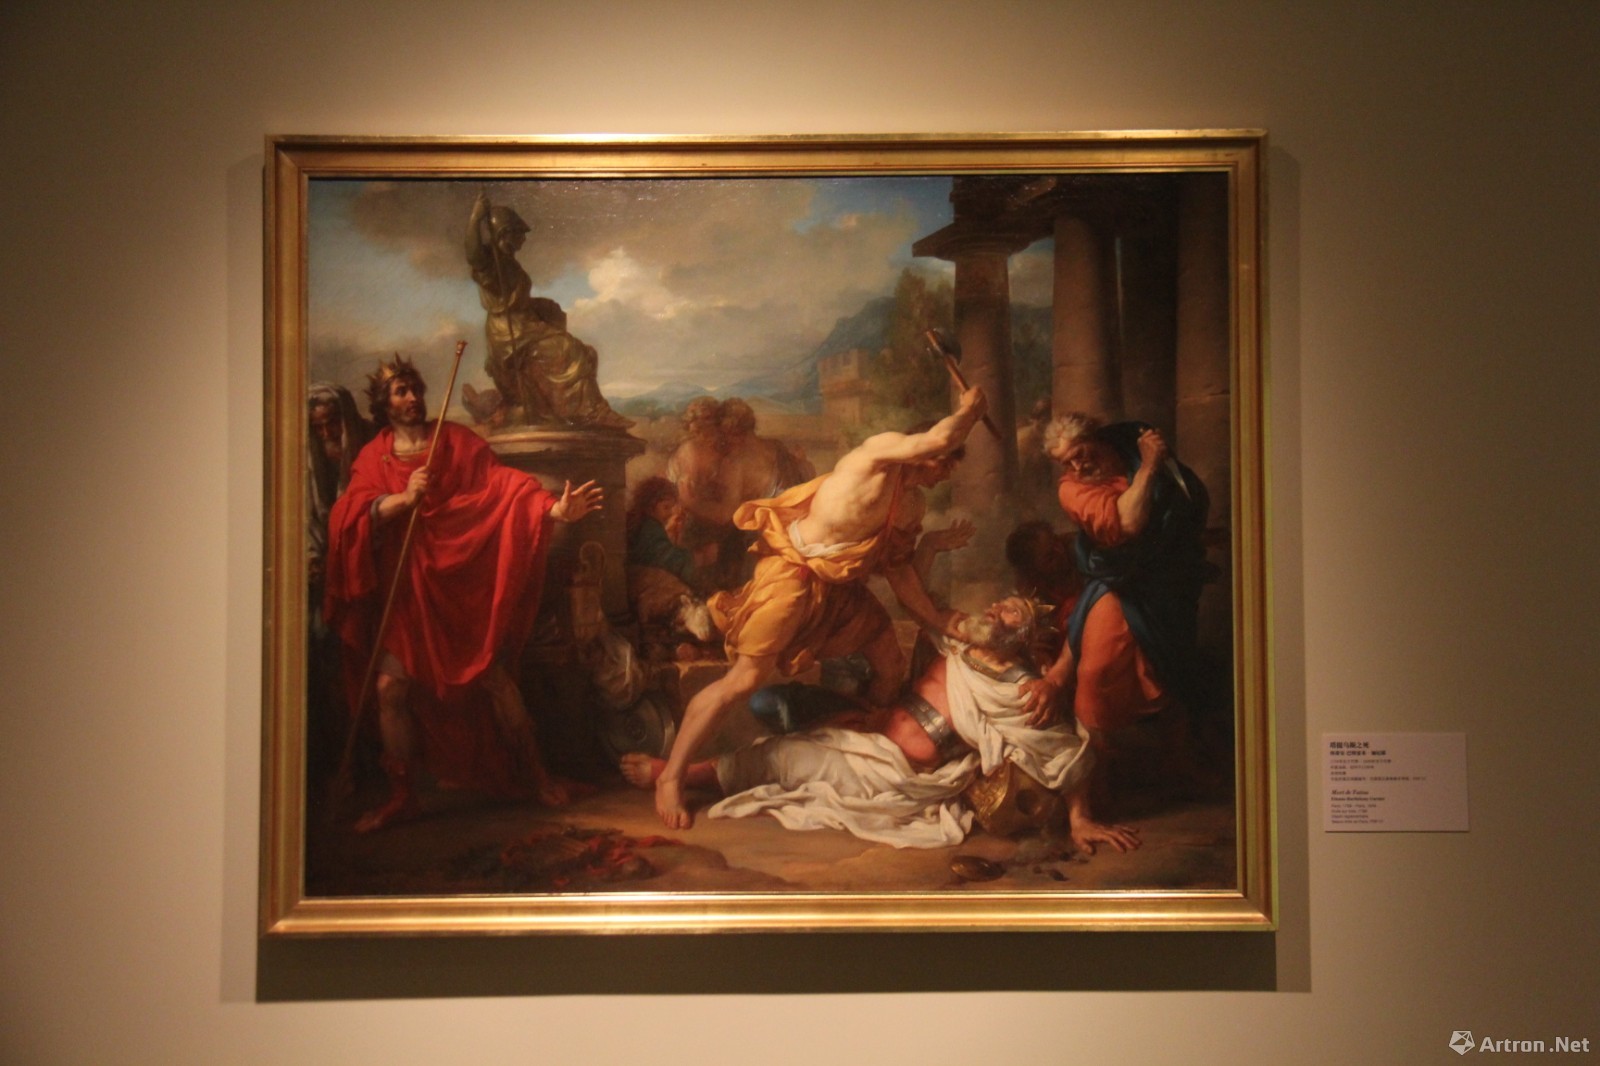 塔提乌斯之死 埃蒂安-巴特雷米·加尼耶 布面油画 1788约瑟夫在埃及